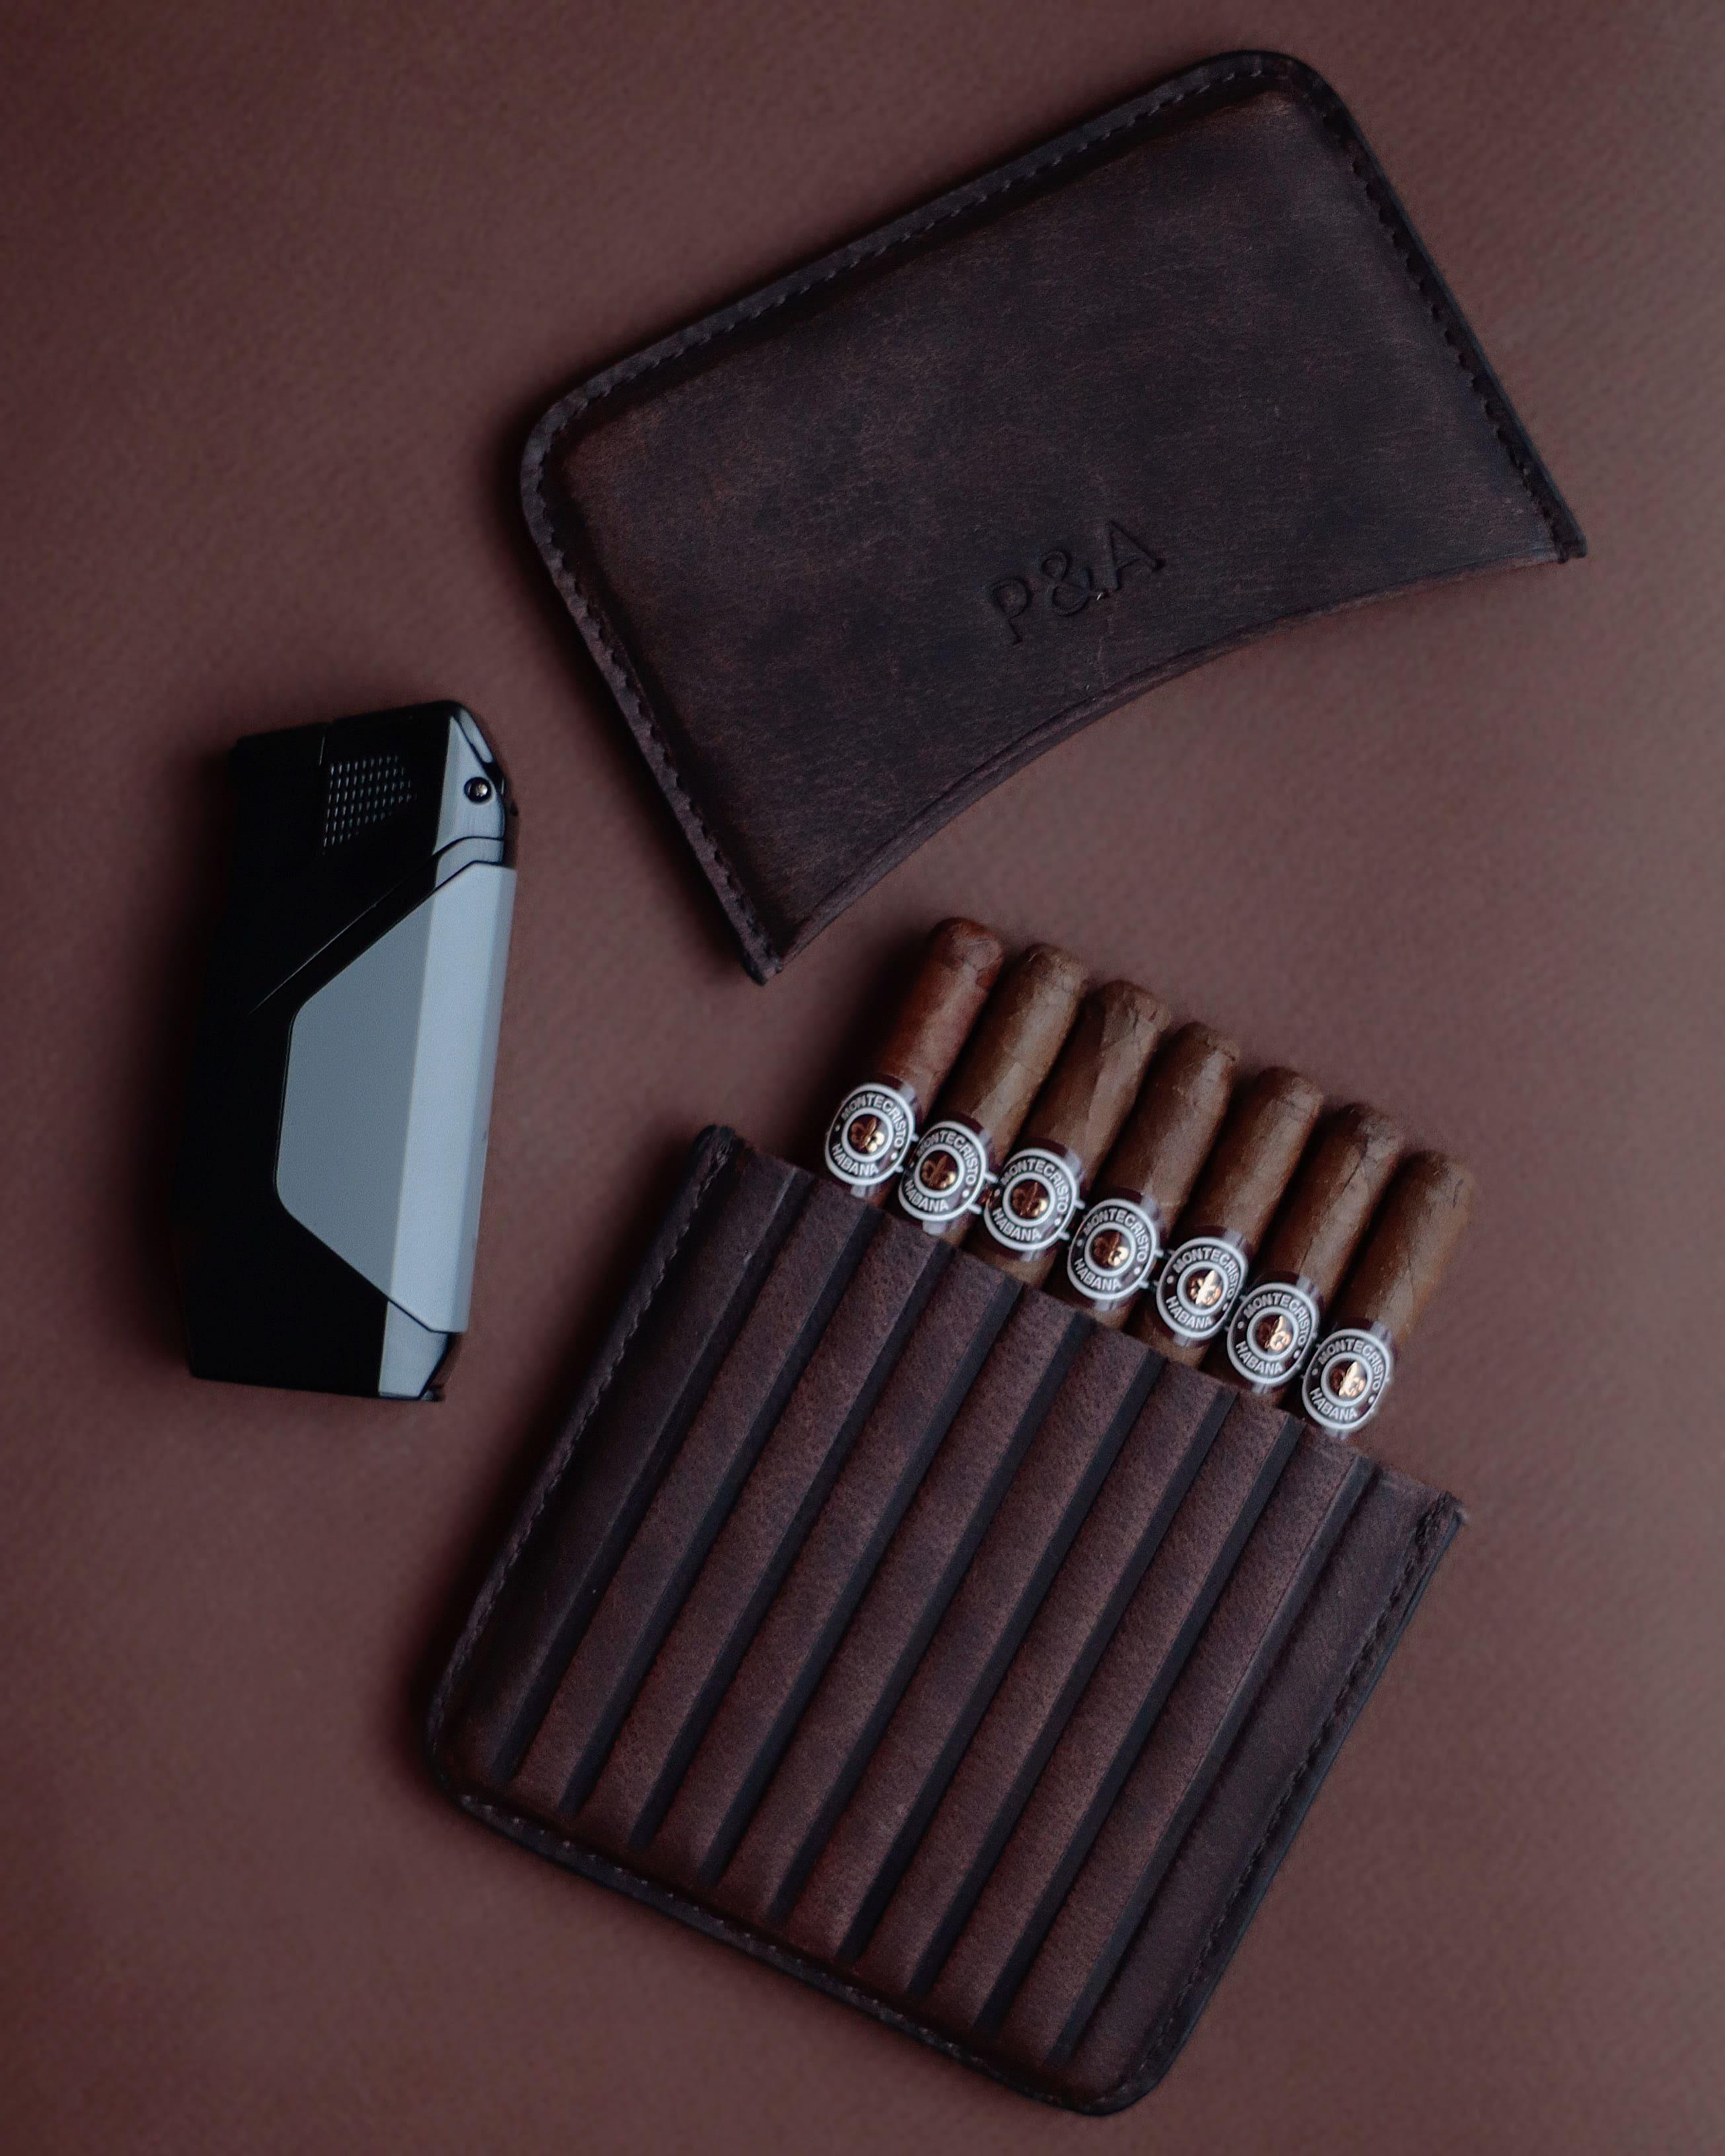 Сигары Сигара Montecristo Joyitas, сигарный чехол P&A, сигарная зажигалка Honest